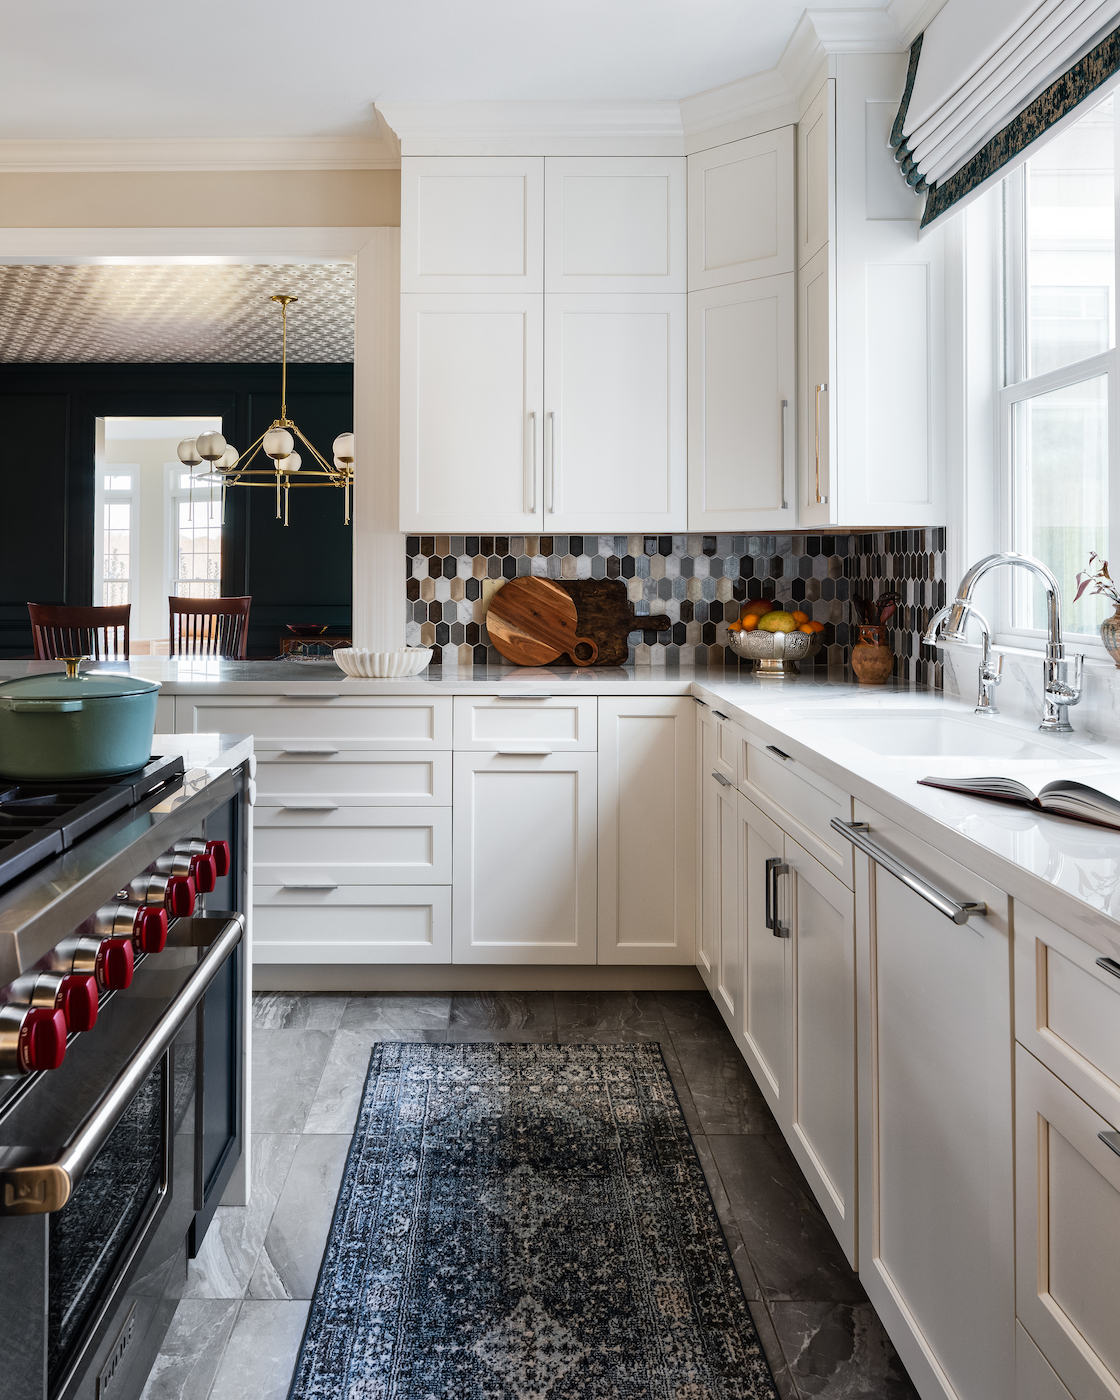 kitchen-interior-design-runner-rug-stainless-steel-range